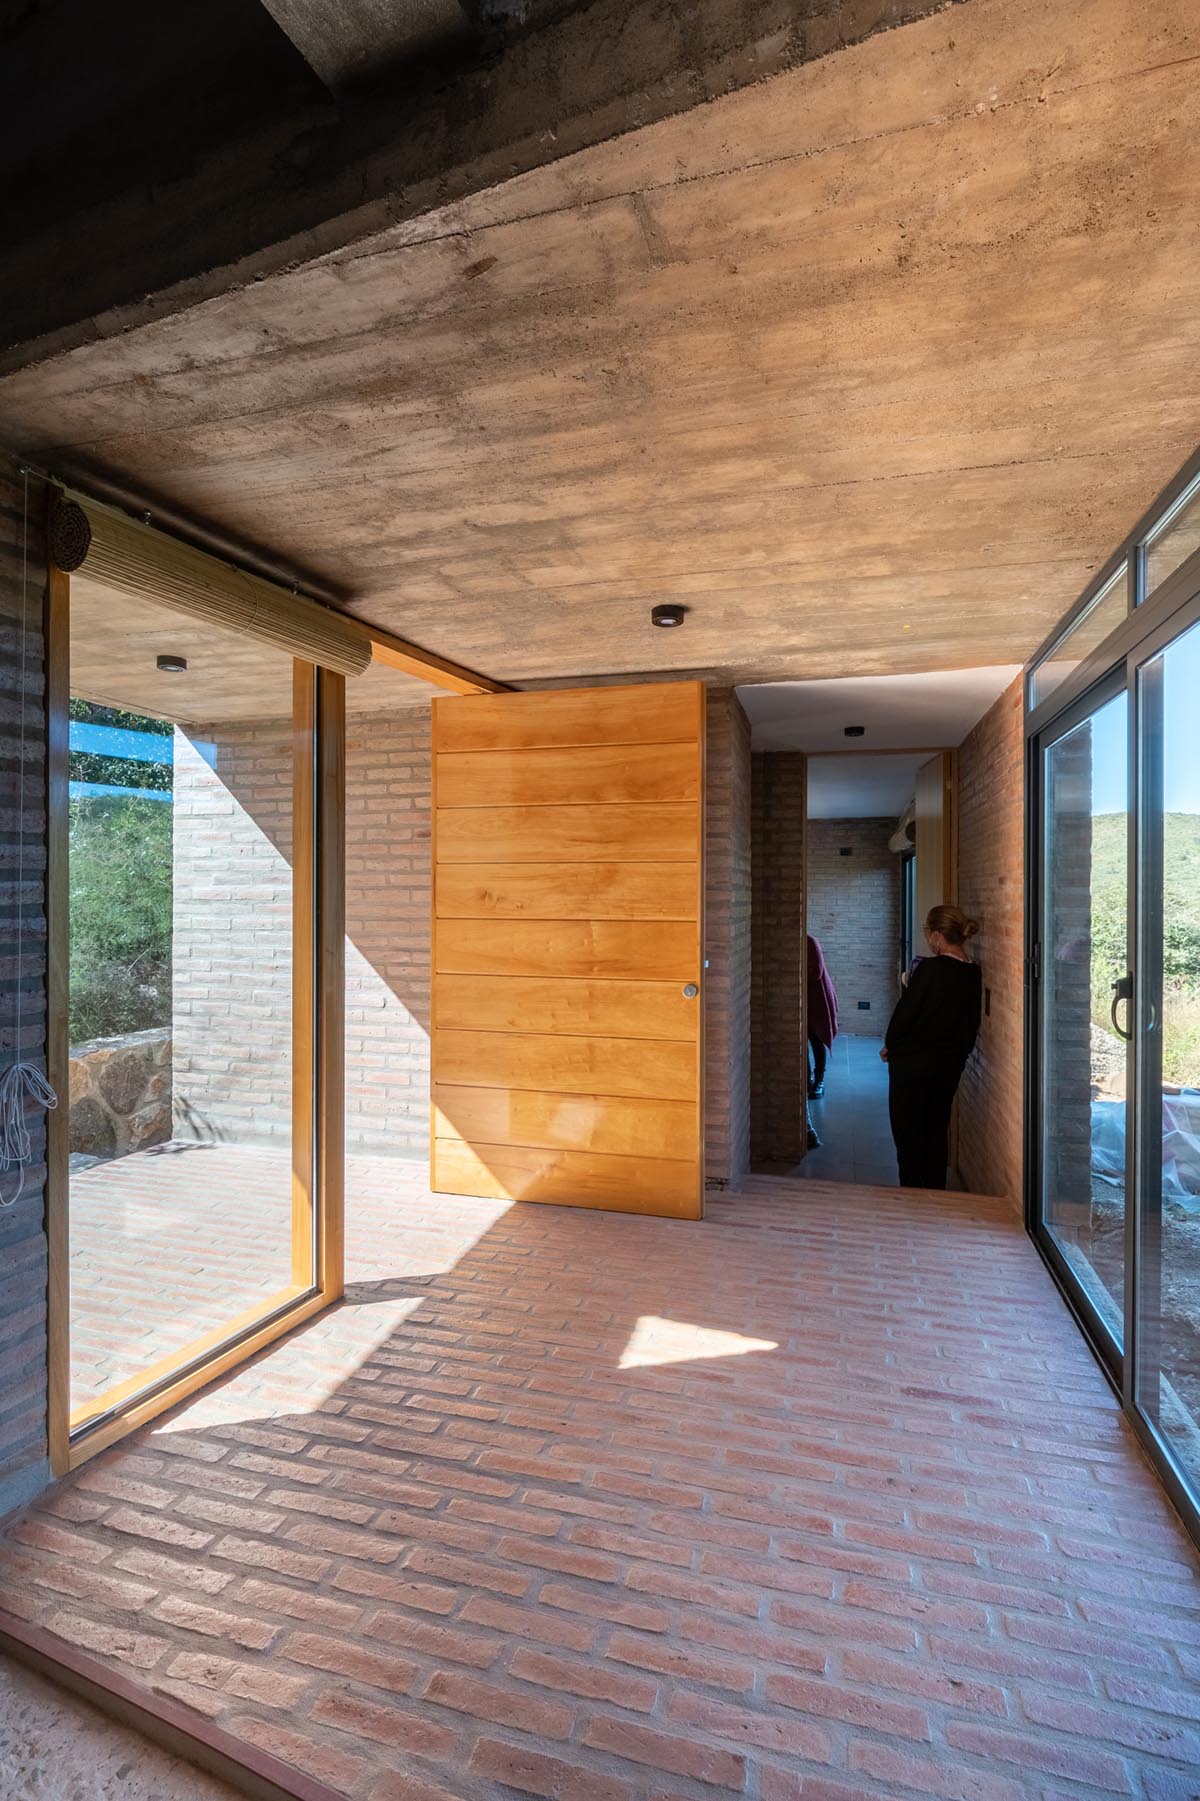 Taller Sur Arquitectura завершает строительство Casa Escondida в Кордове, Аргентина. 